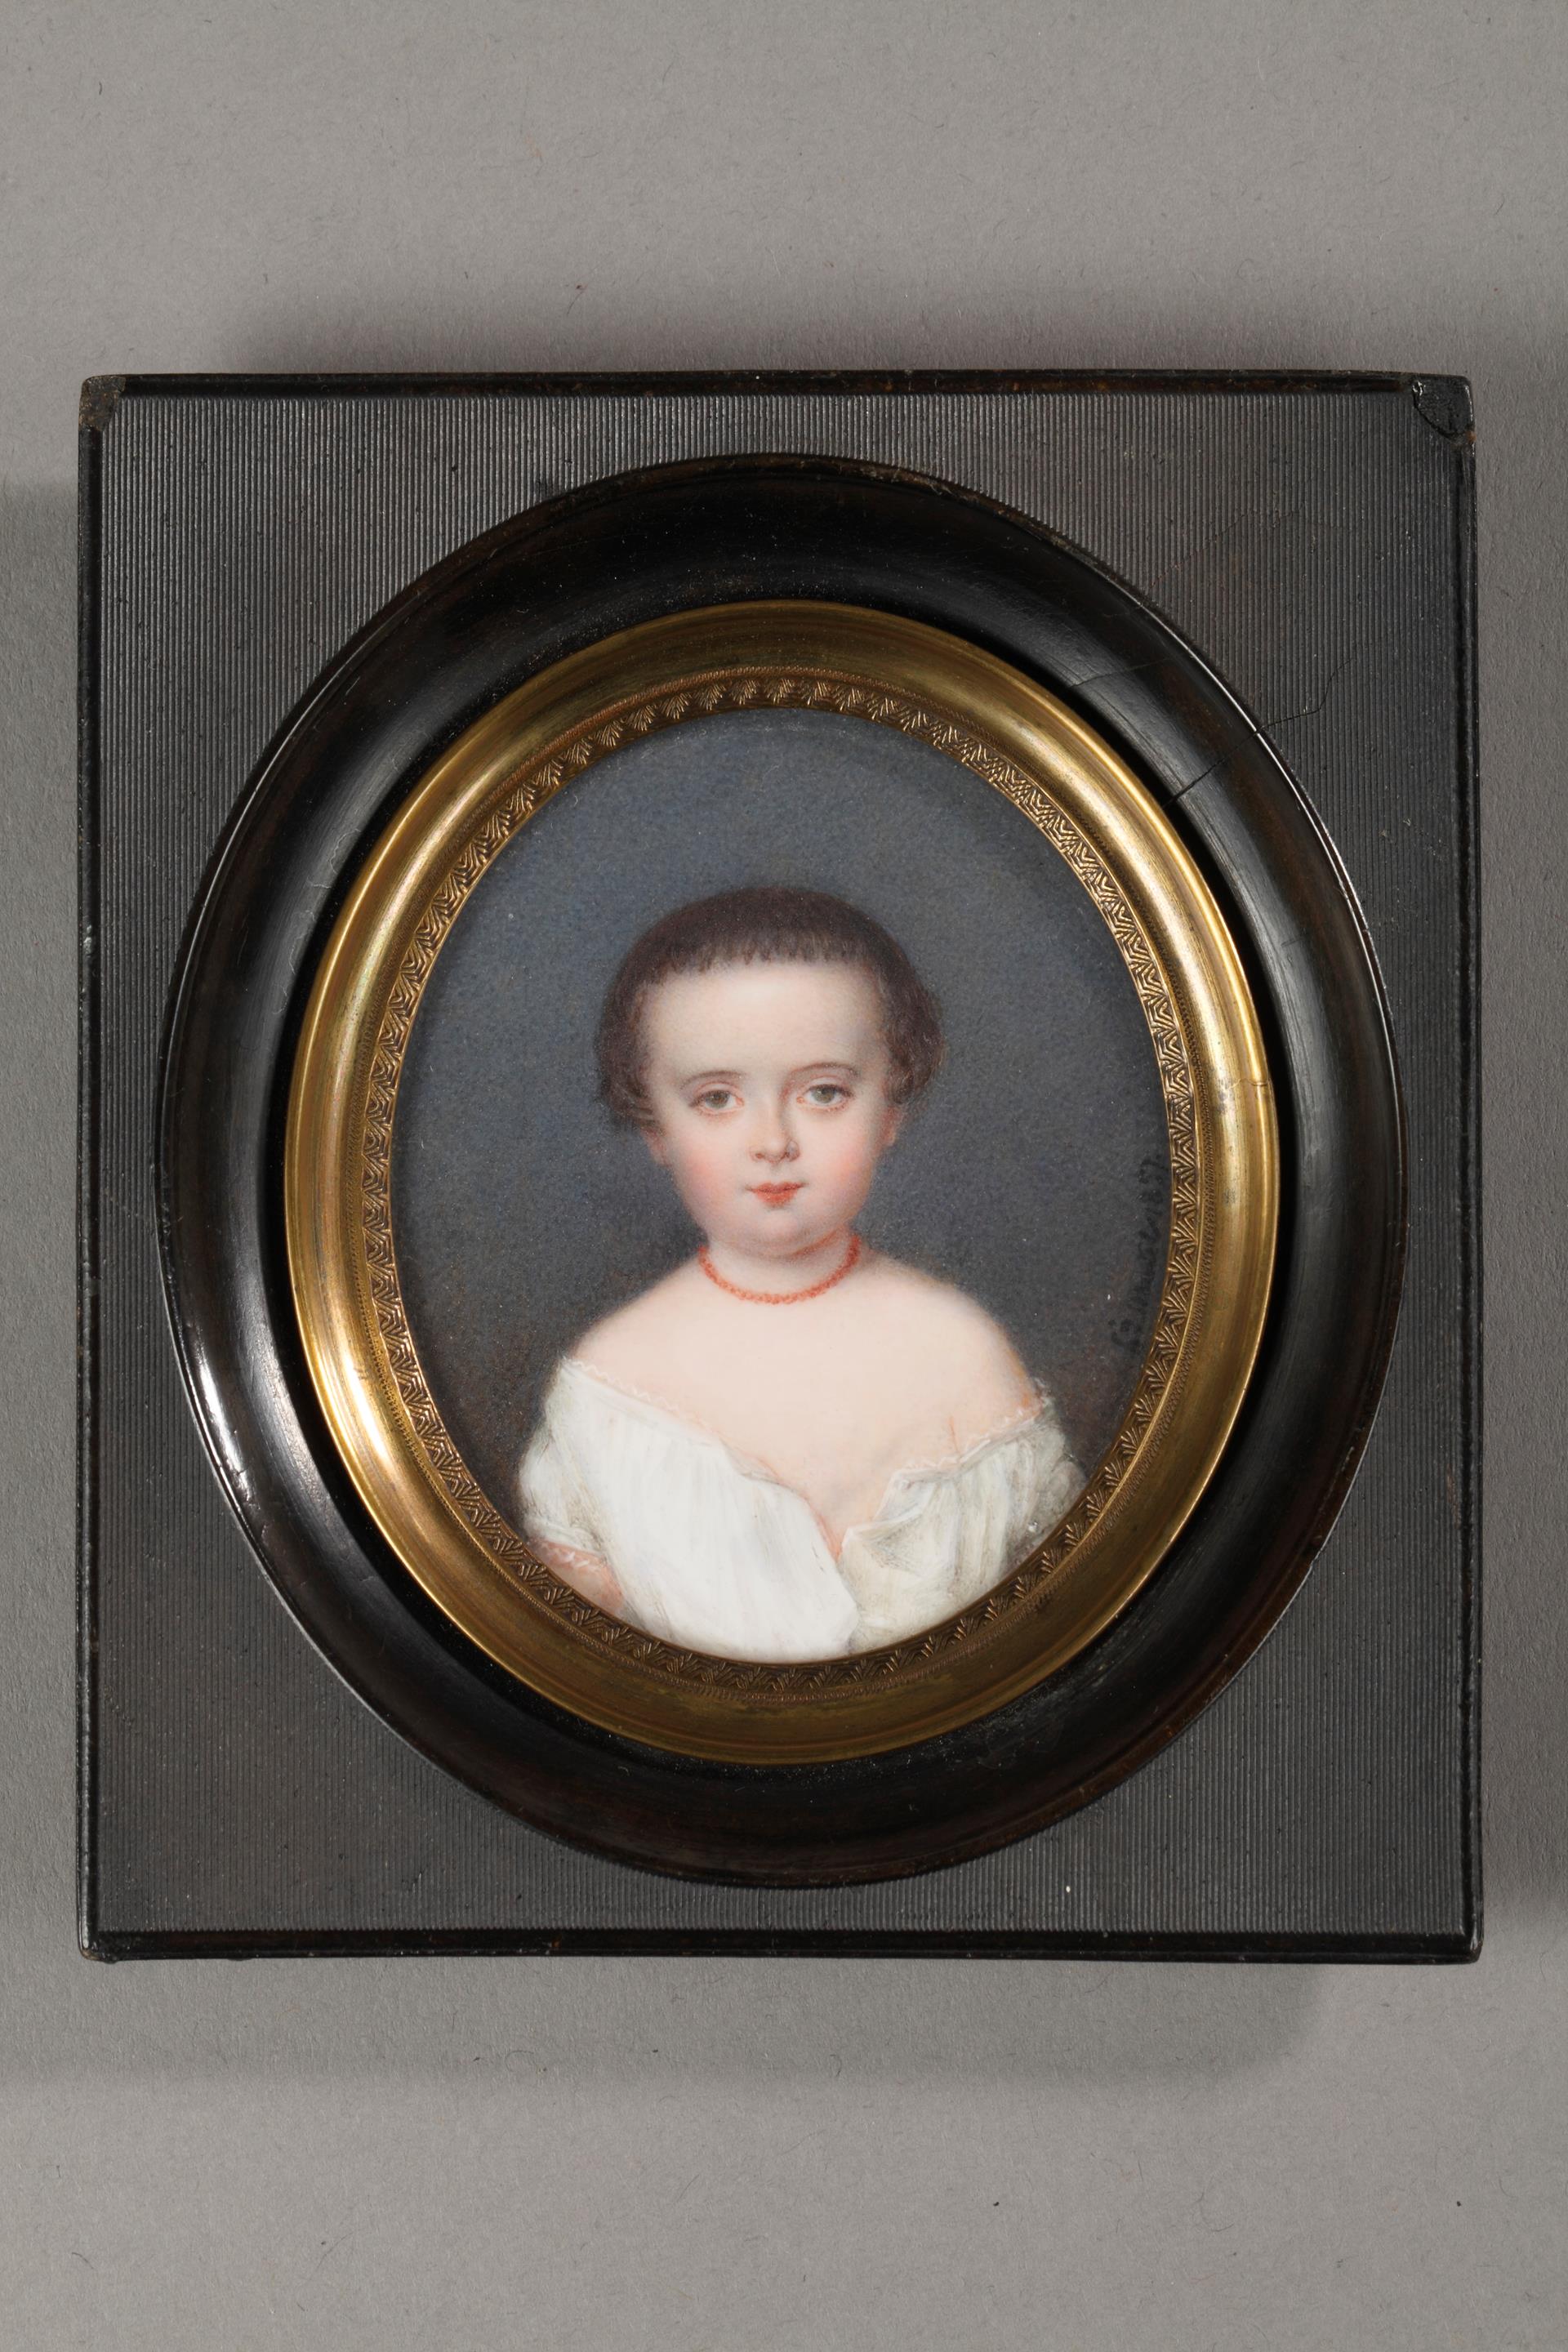 Miniature, ivory, restauration period, Louis Philippe, children portrait, Mutel